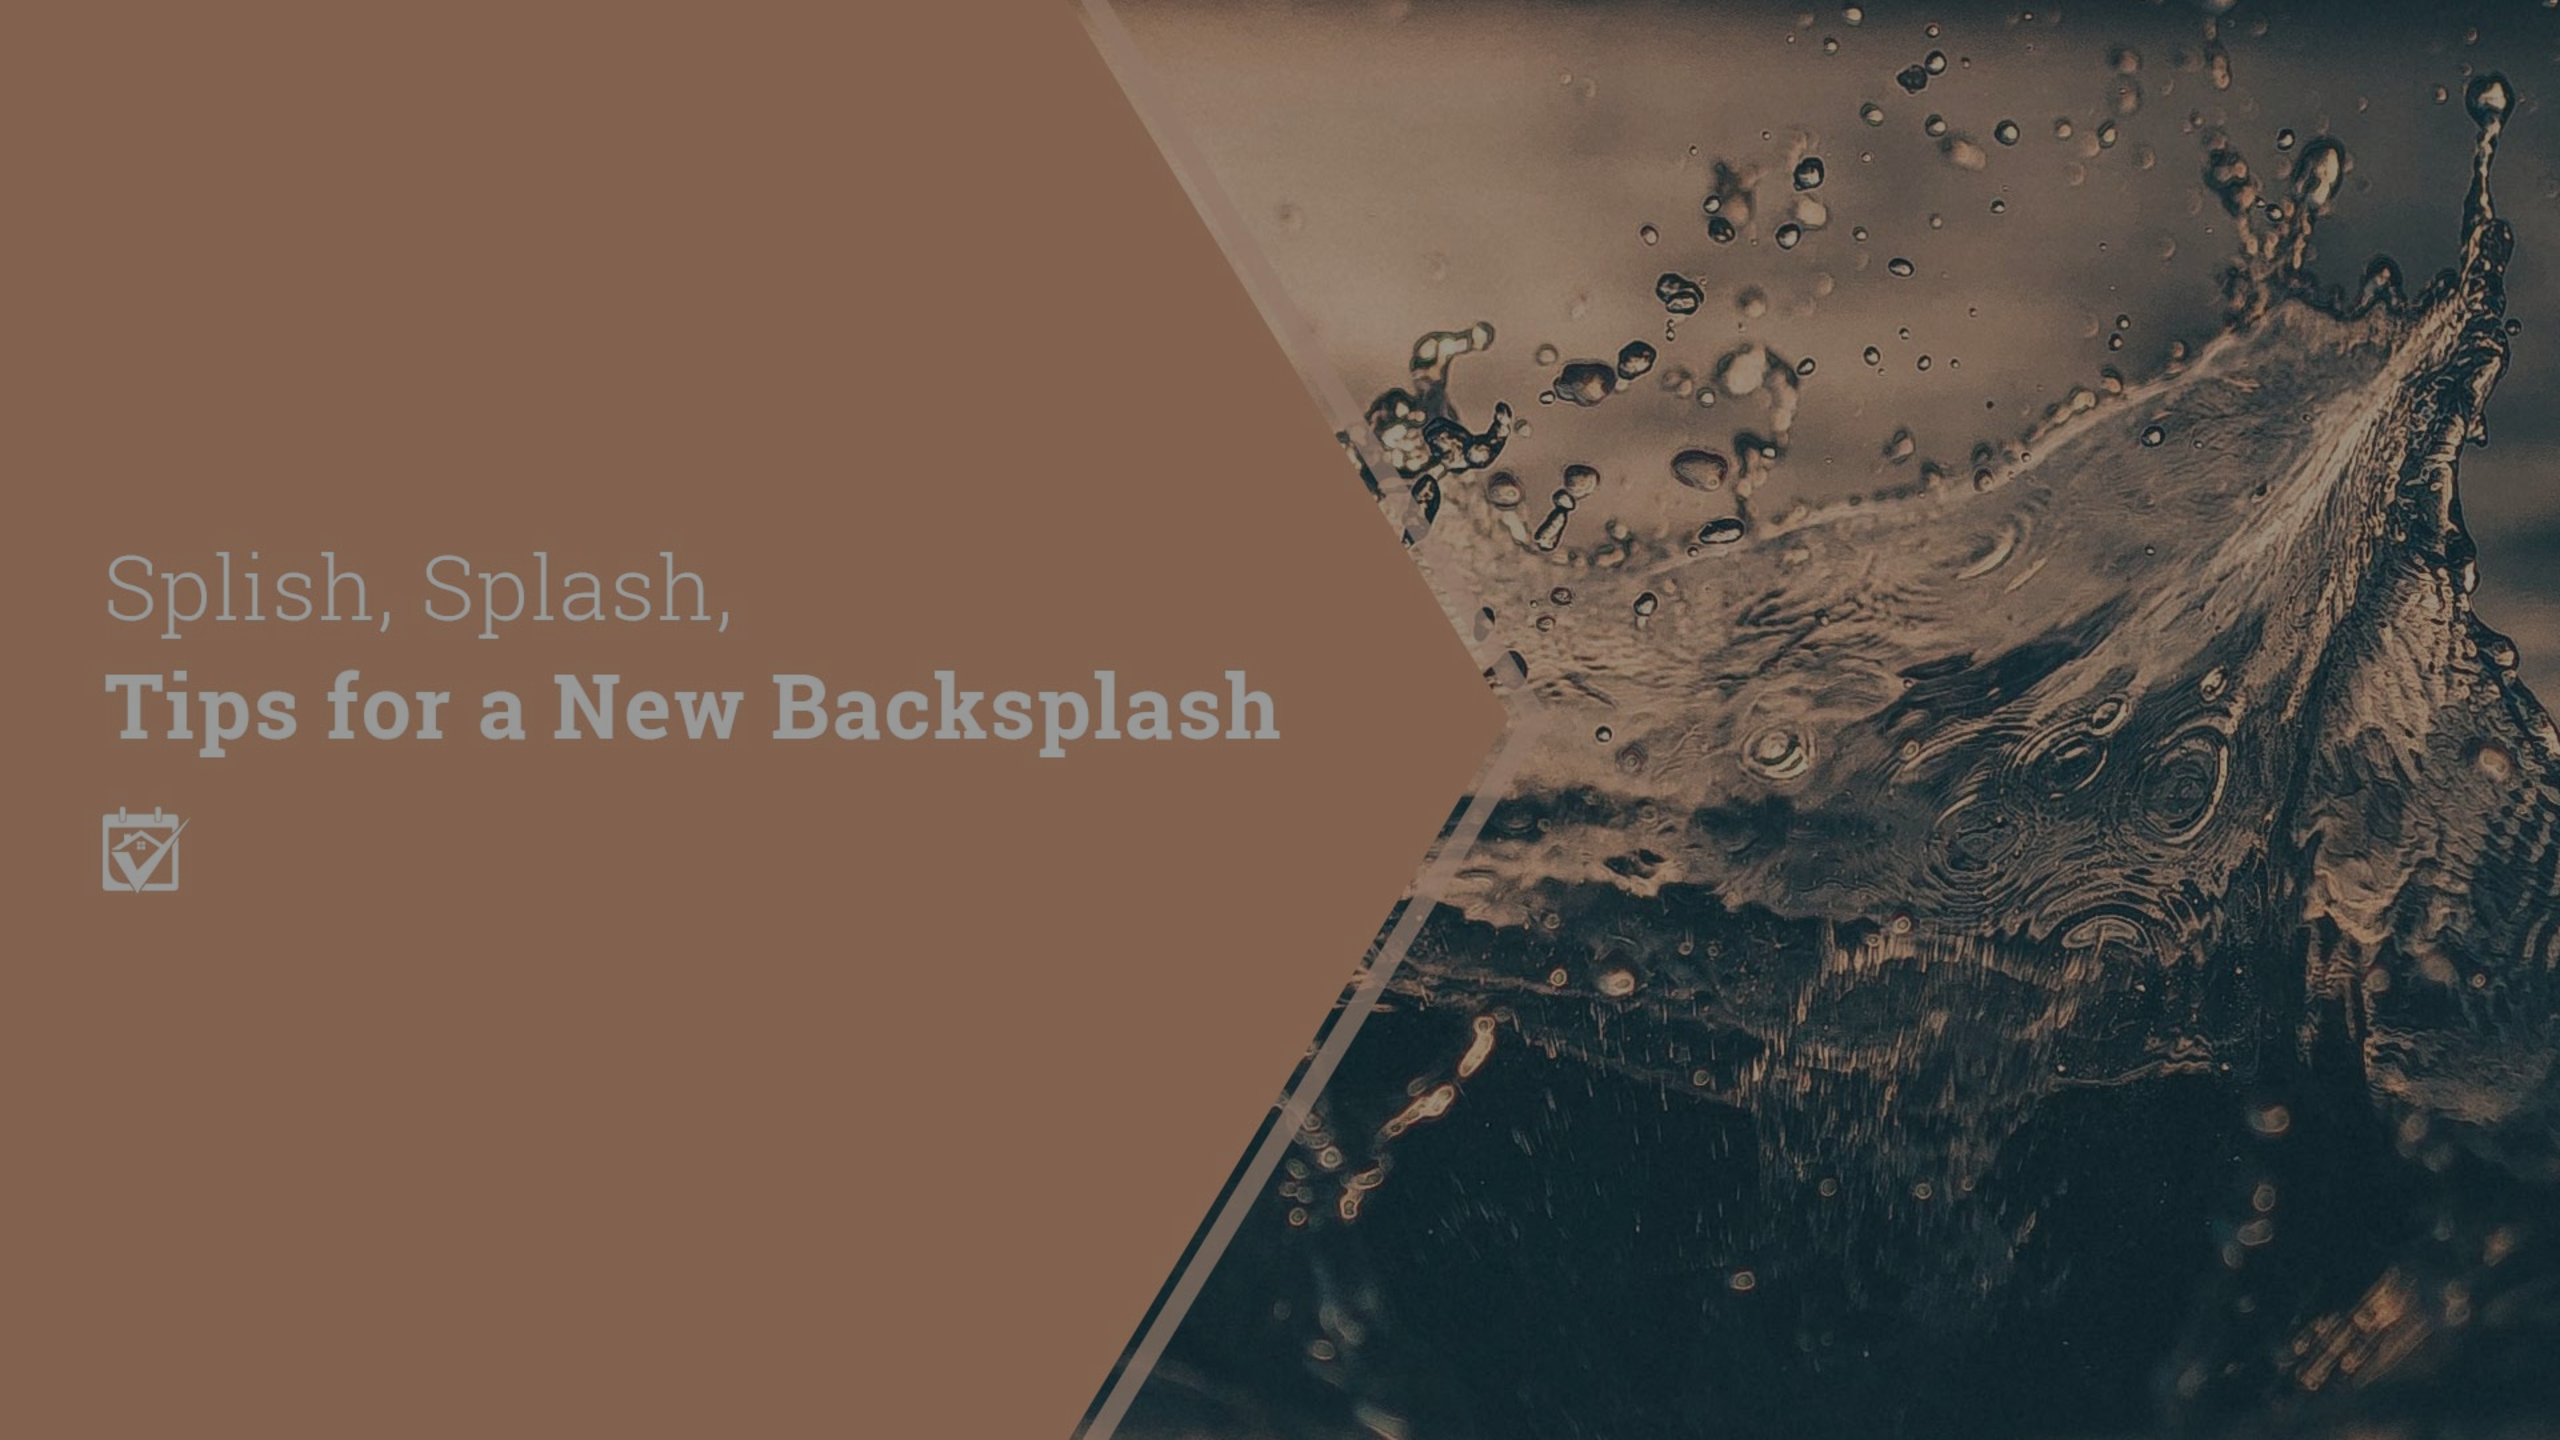 Splish, Splash, Tips for a New Backsplash